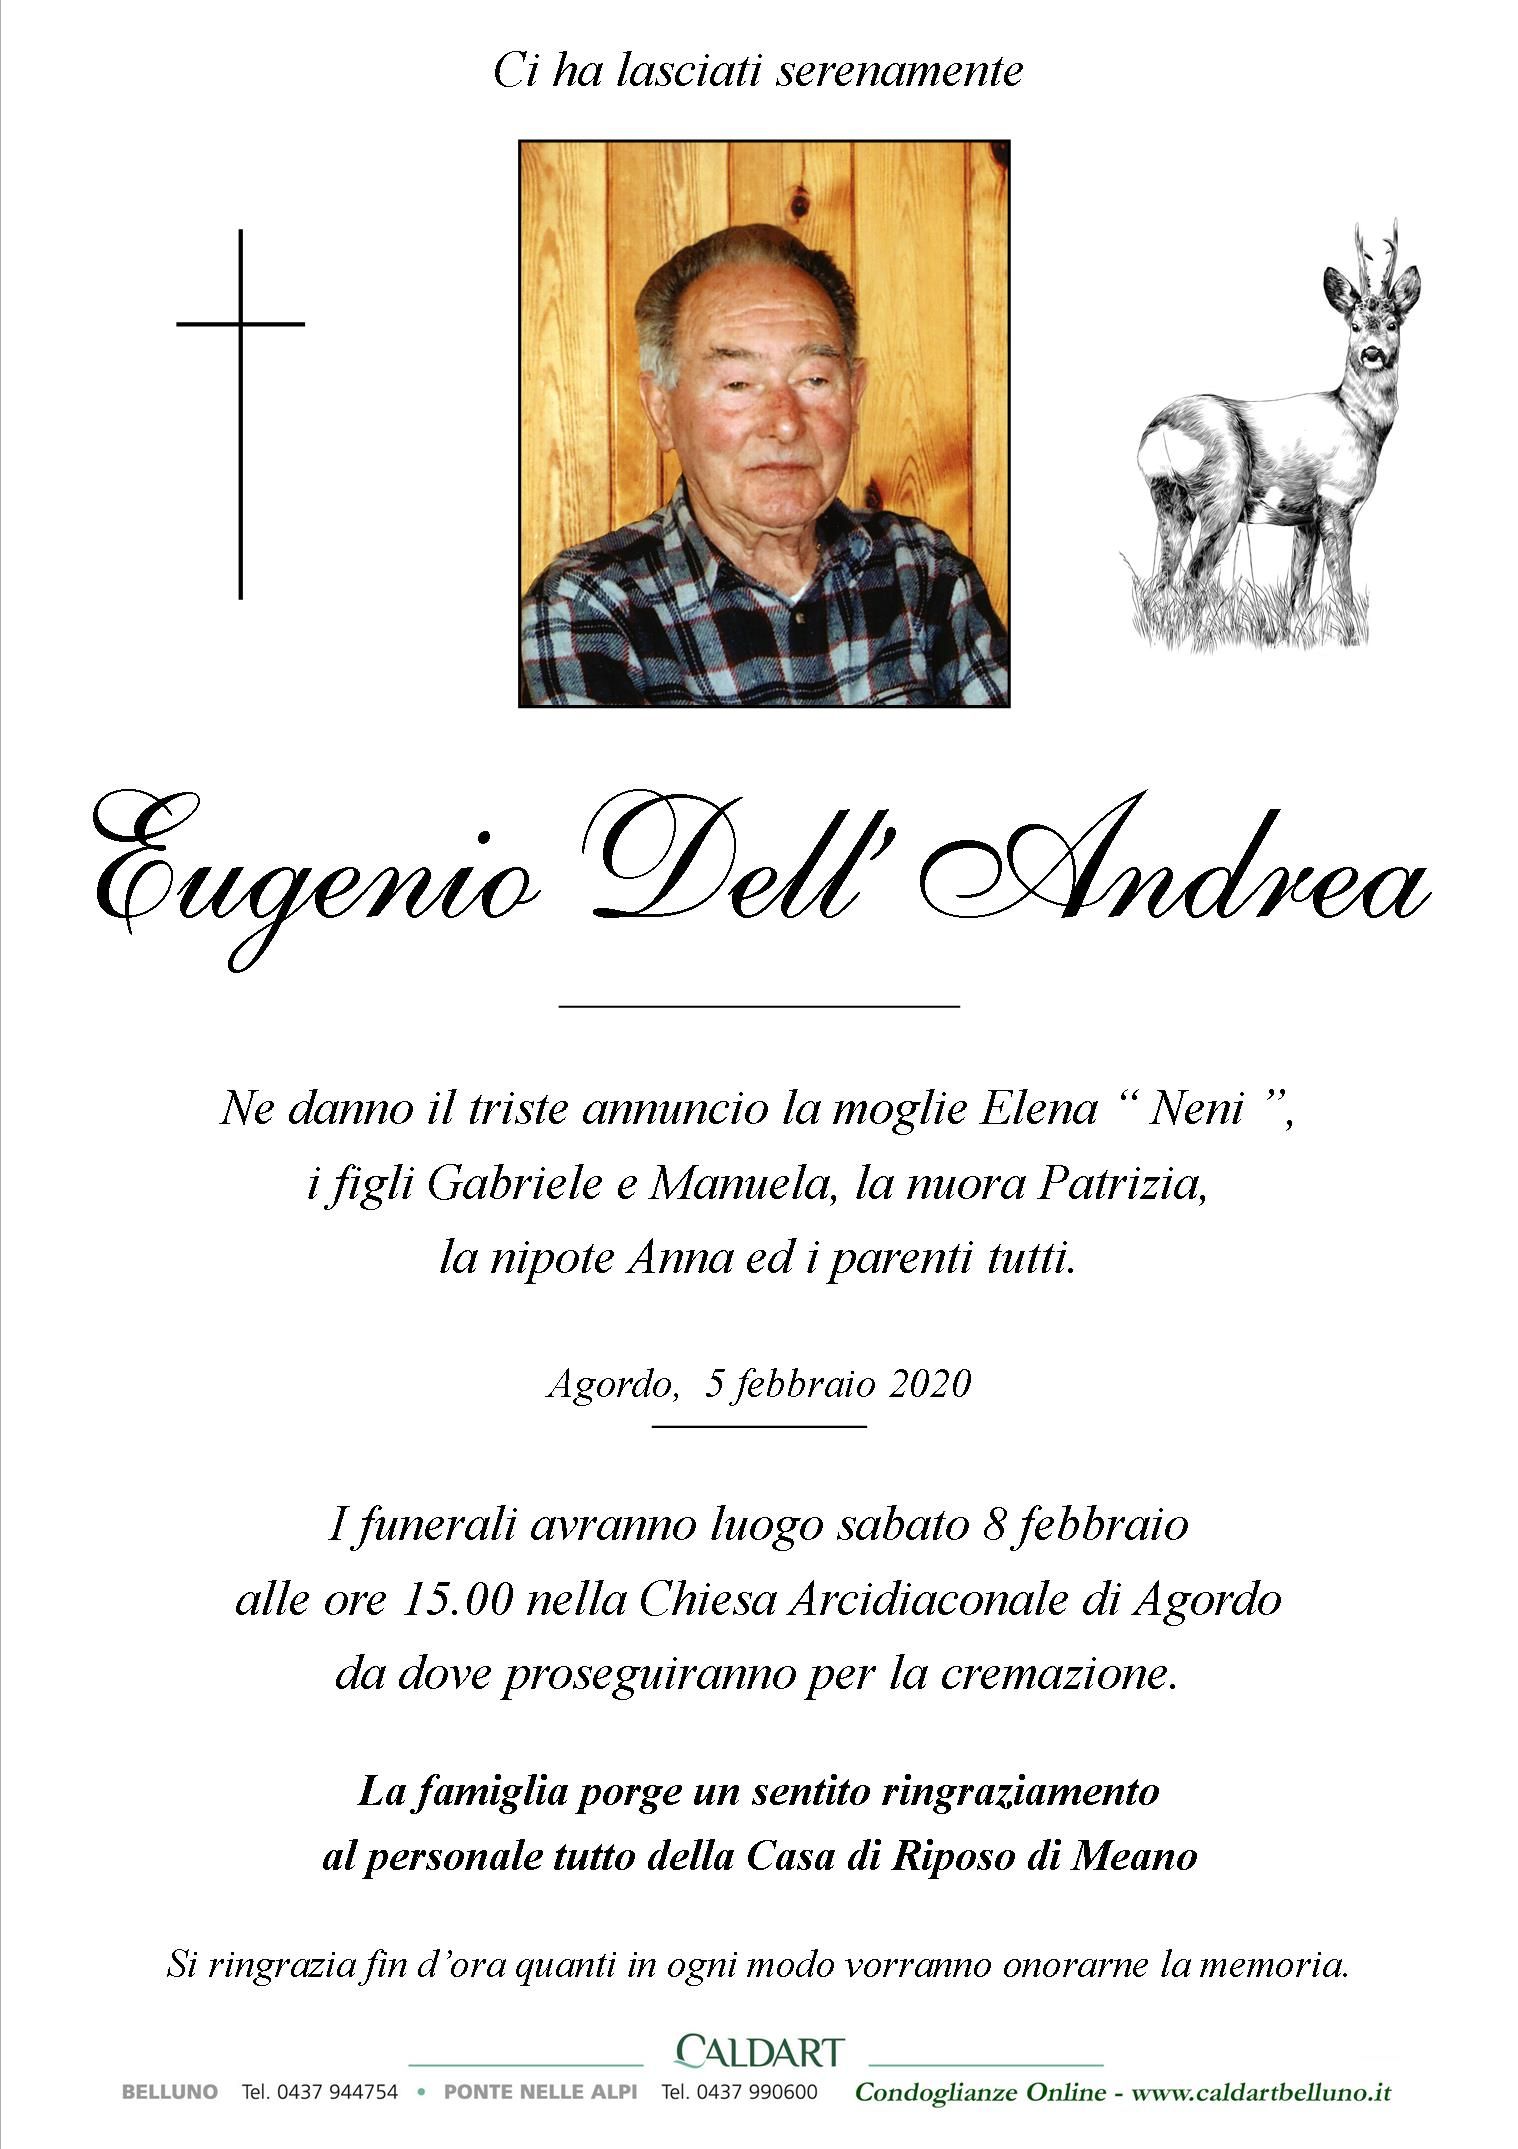 Dell'Andrea Eugenio